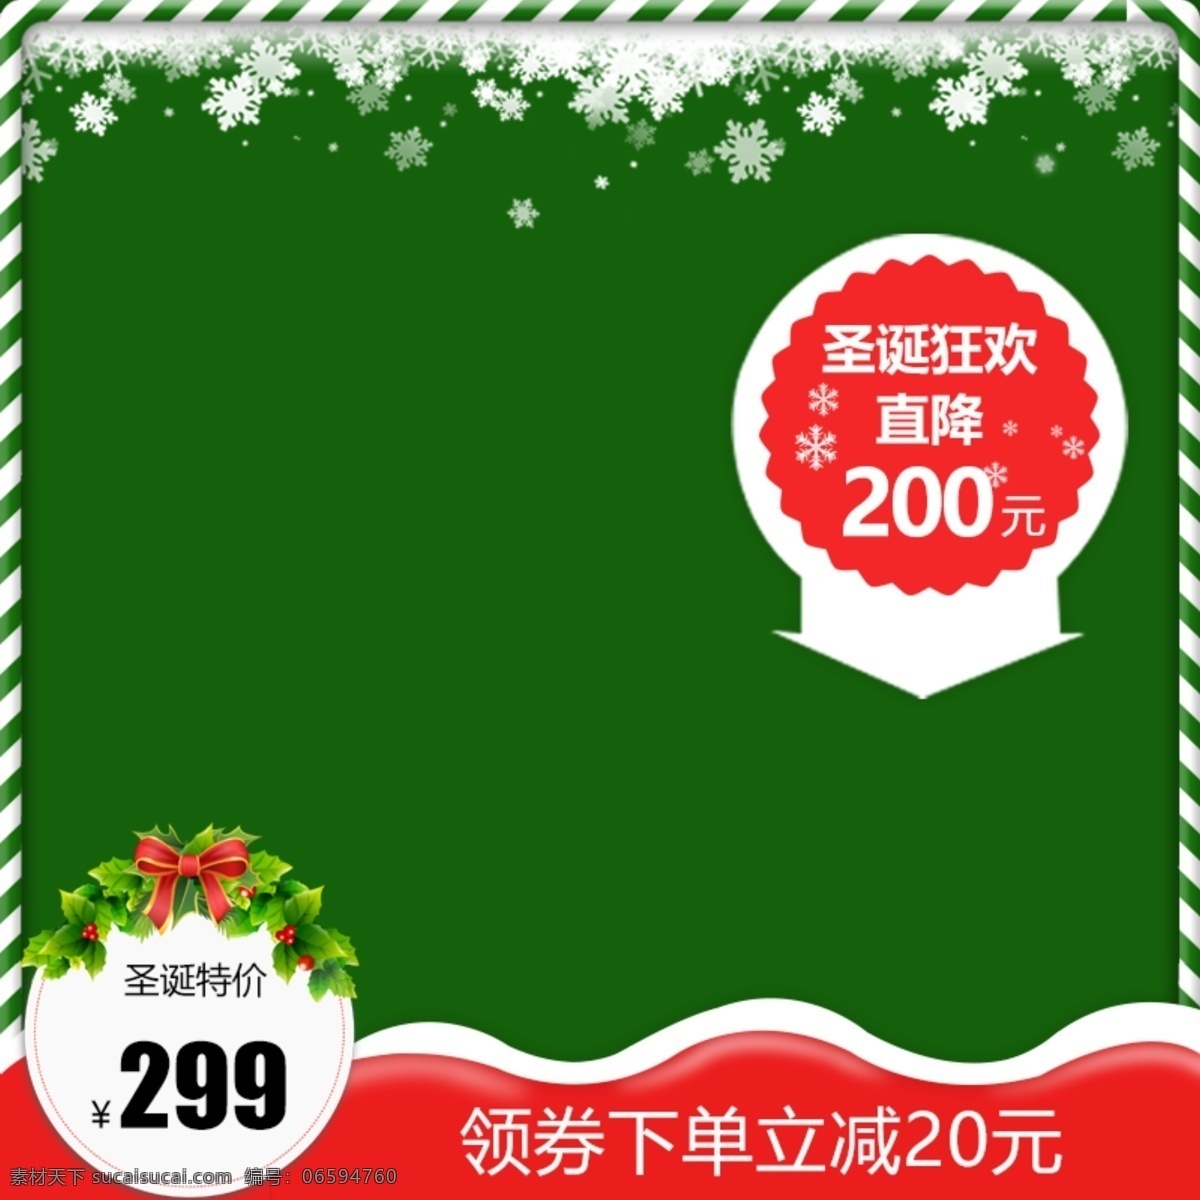 圣诞 狂欢 绿色 主 图 圣诞节 红色 雪花 蝴蝶结 圣诞狂欢 特价 直降 圣诞框